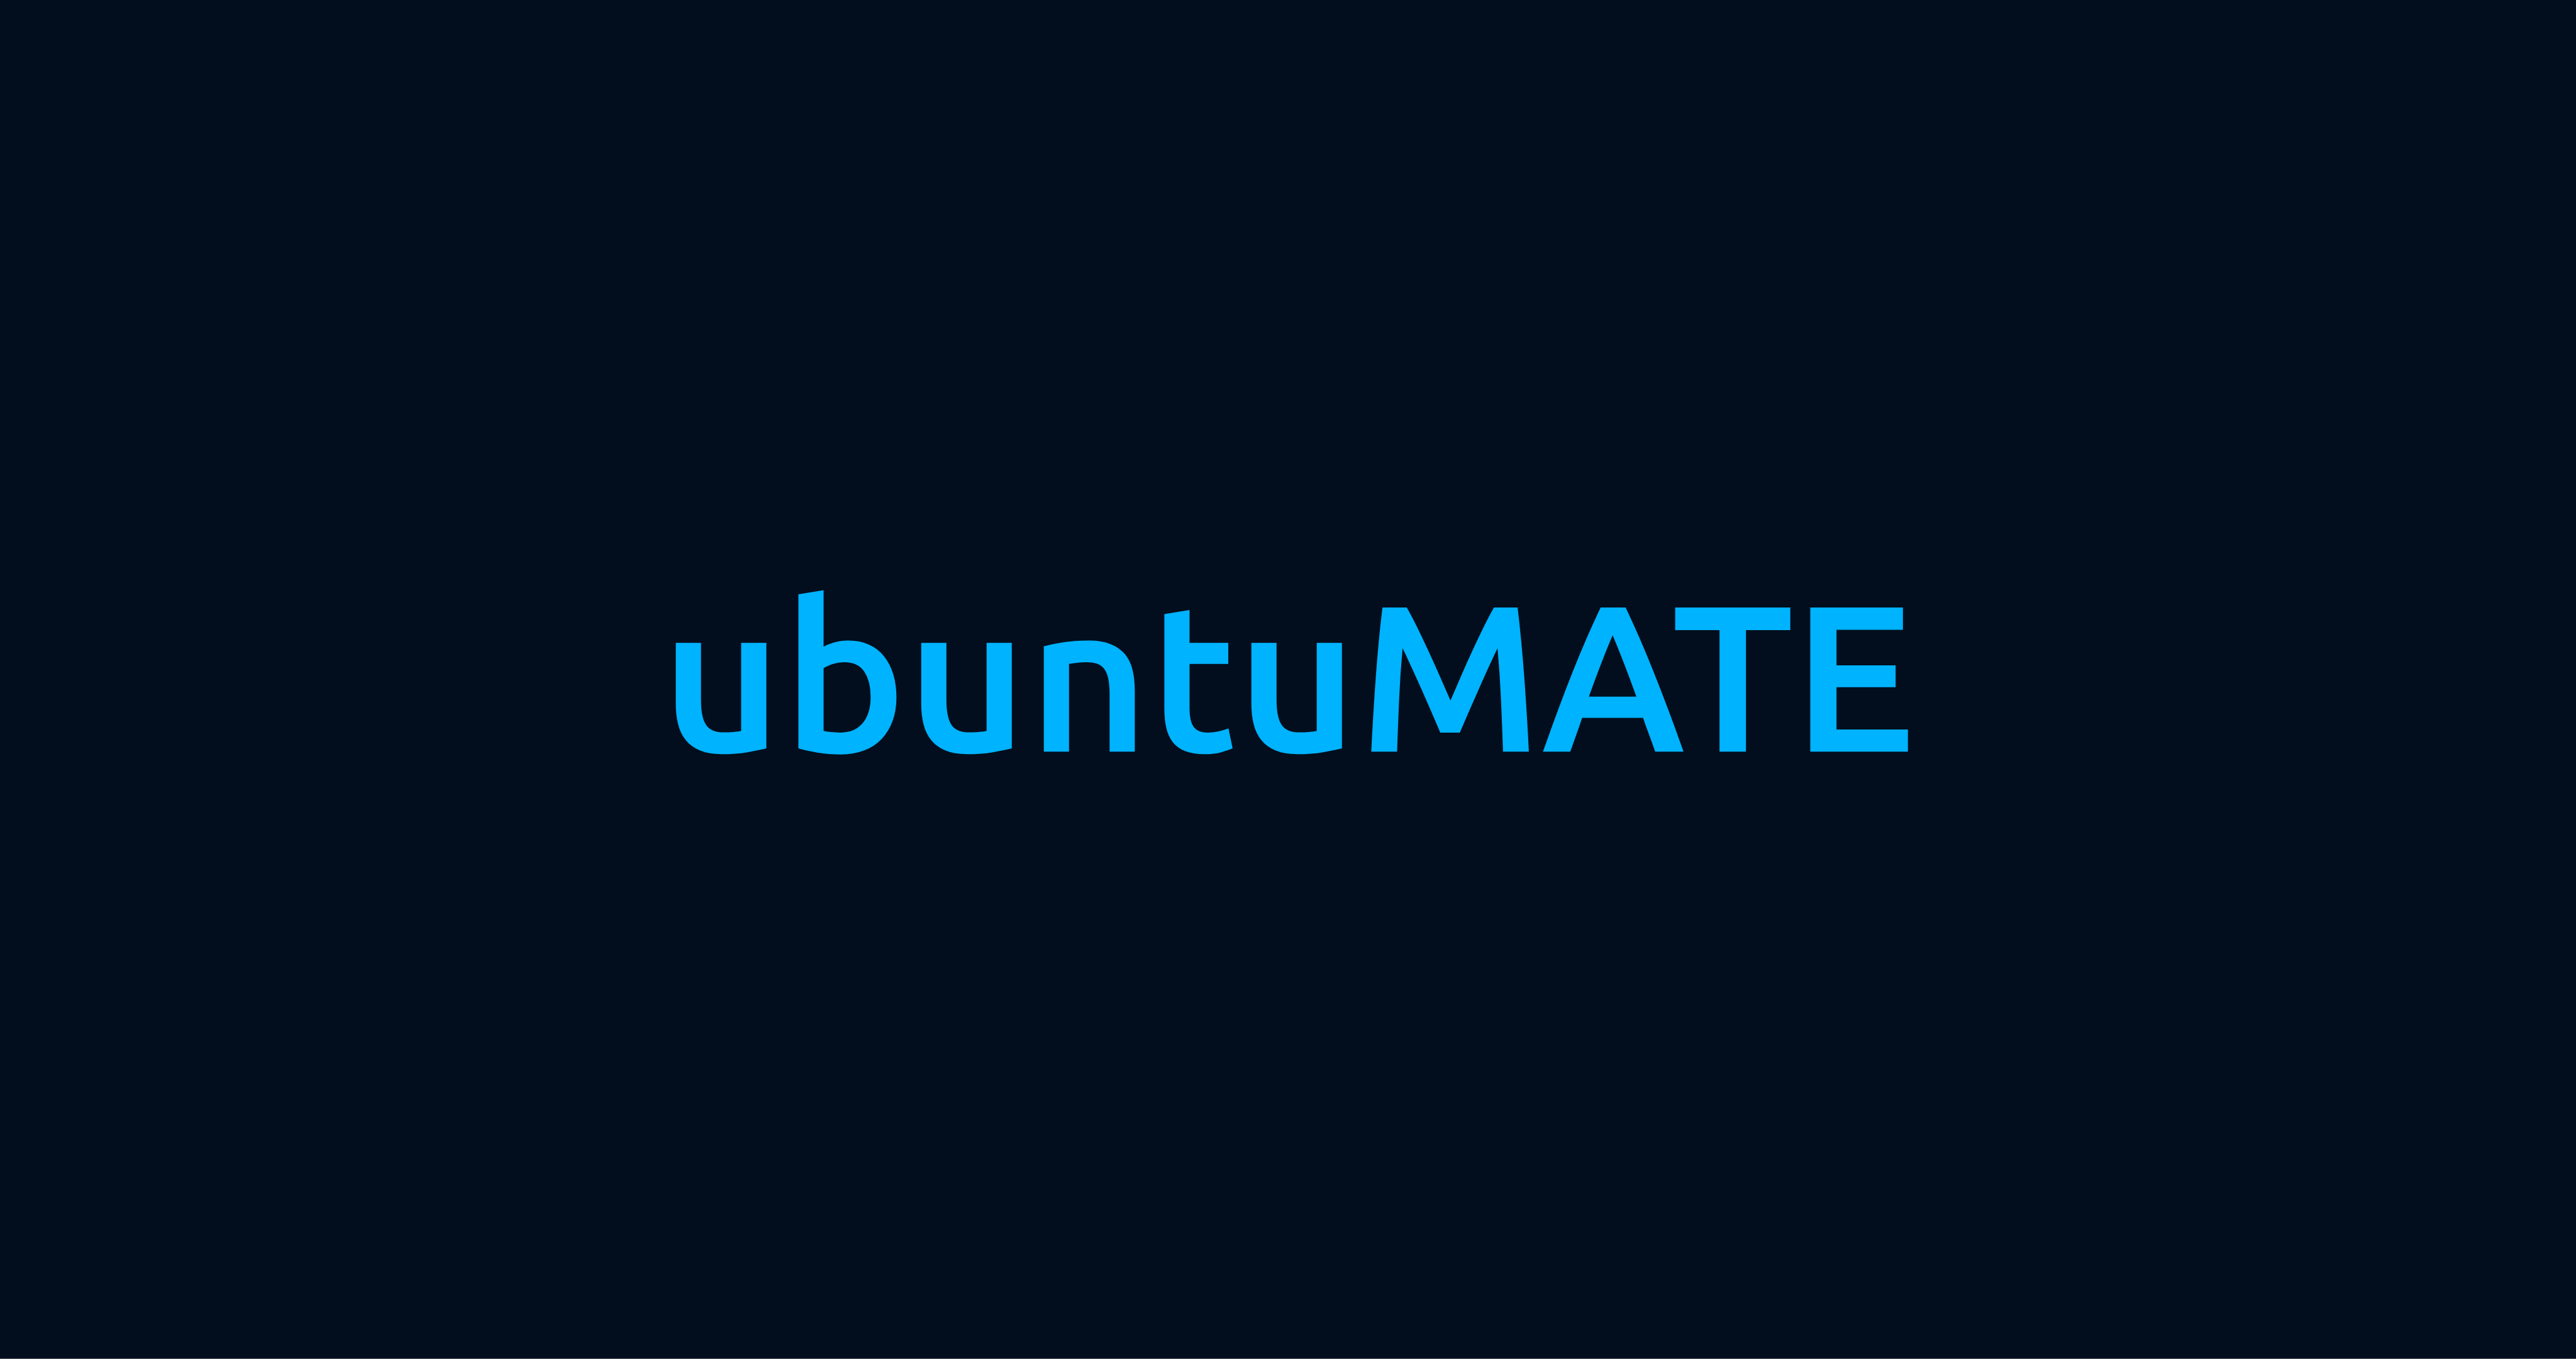 ubuntu MATE Dark Blue Wallpaper